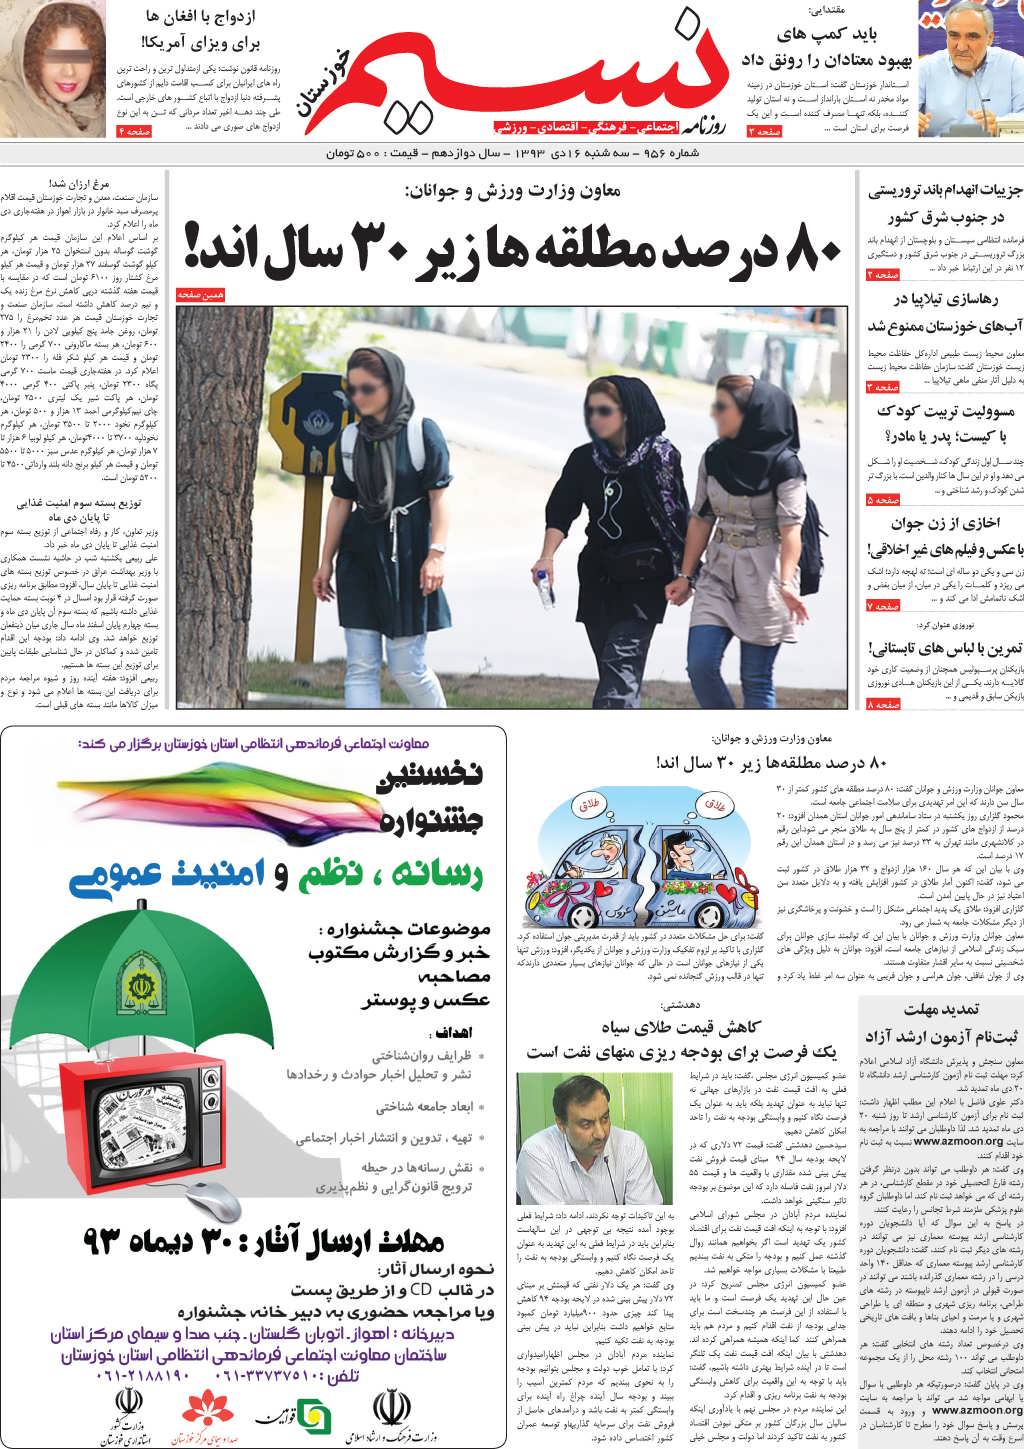 صفحه اصلی روزنامه نسیم شماره 956 